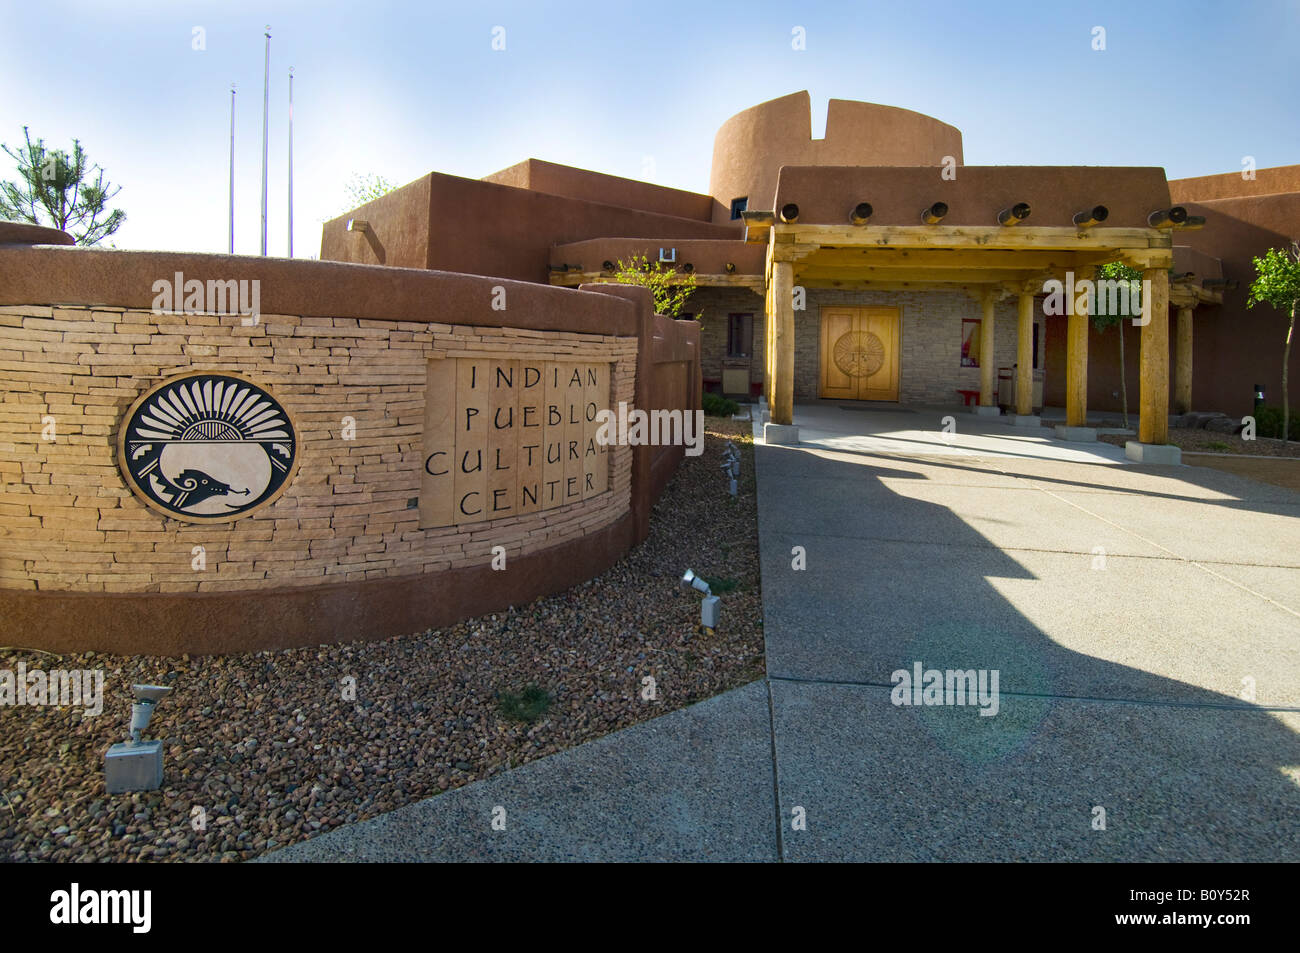 Indian Pueblo Cultural Center Albuquerque New Mexico Stock Photo